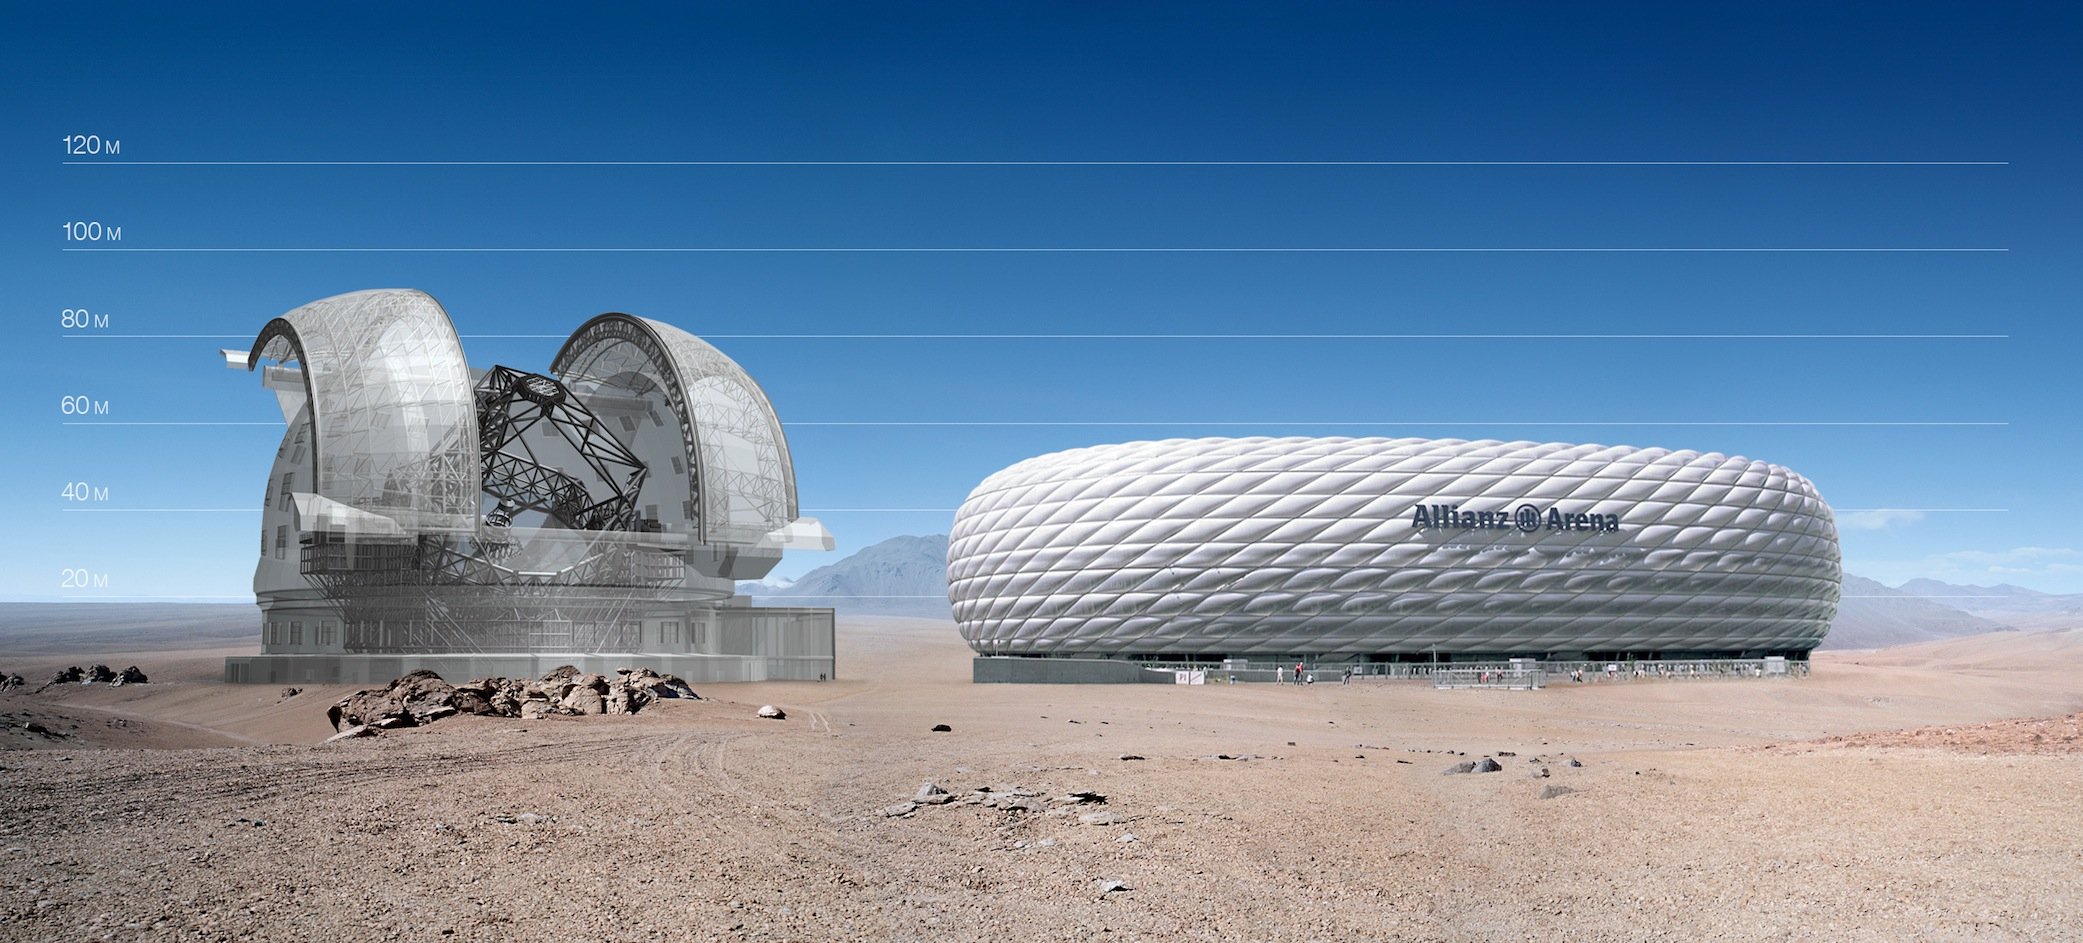 Das European Extremely Large Telescope, kurz E-ELT, das mehrere europäische Länder derzeit in Chile auf dem Cerro Armazones bauen, wird riesig sein. Hier ein Vergleich mit der Allianz-Arena in München, die rund 75.000 Zuschauern Platz bietet.